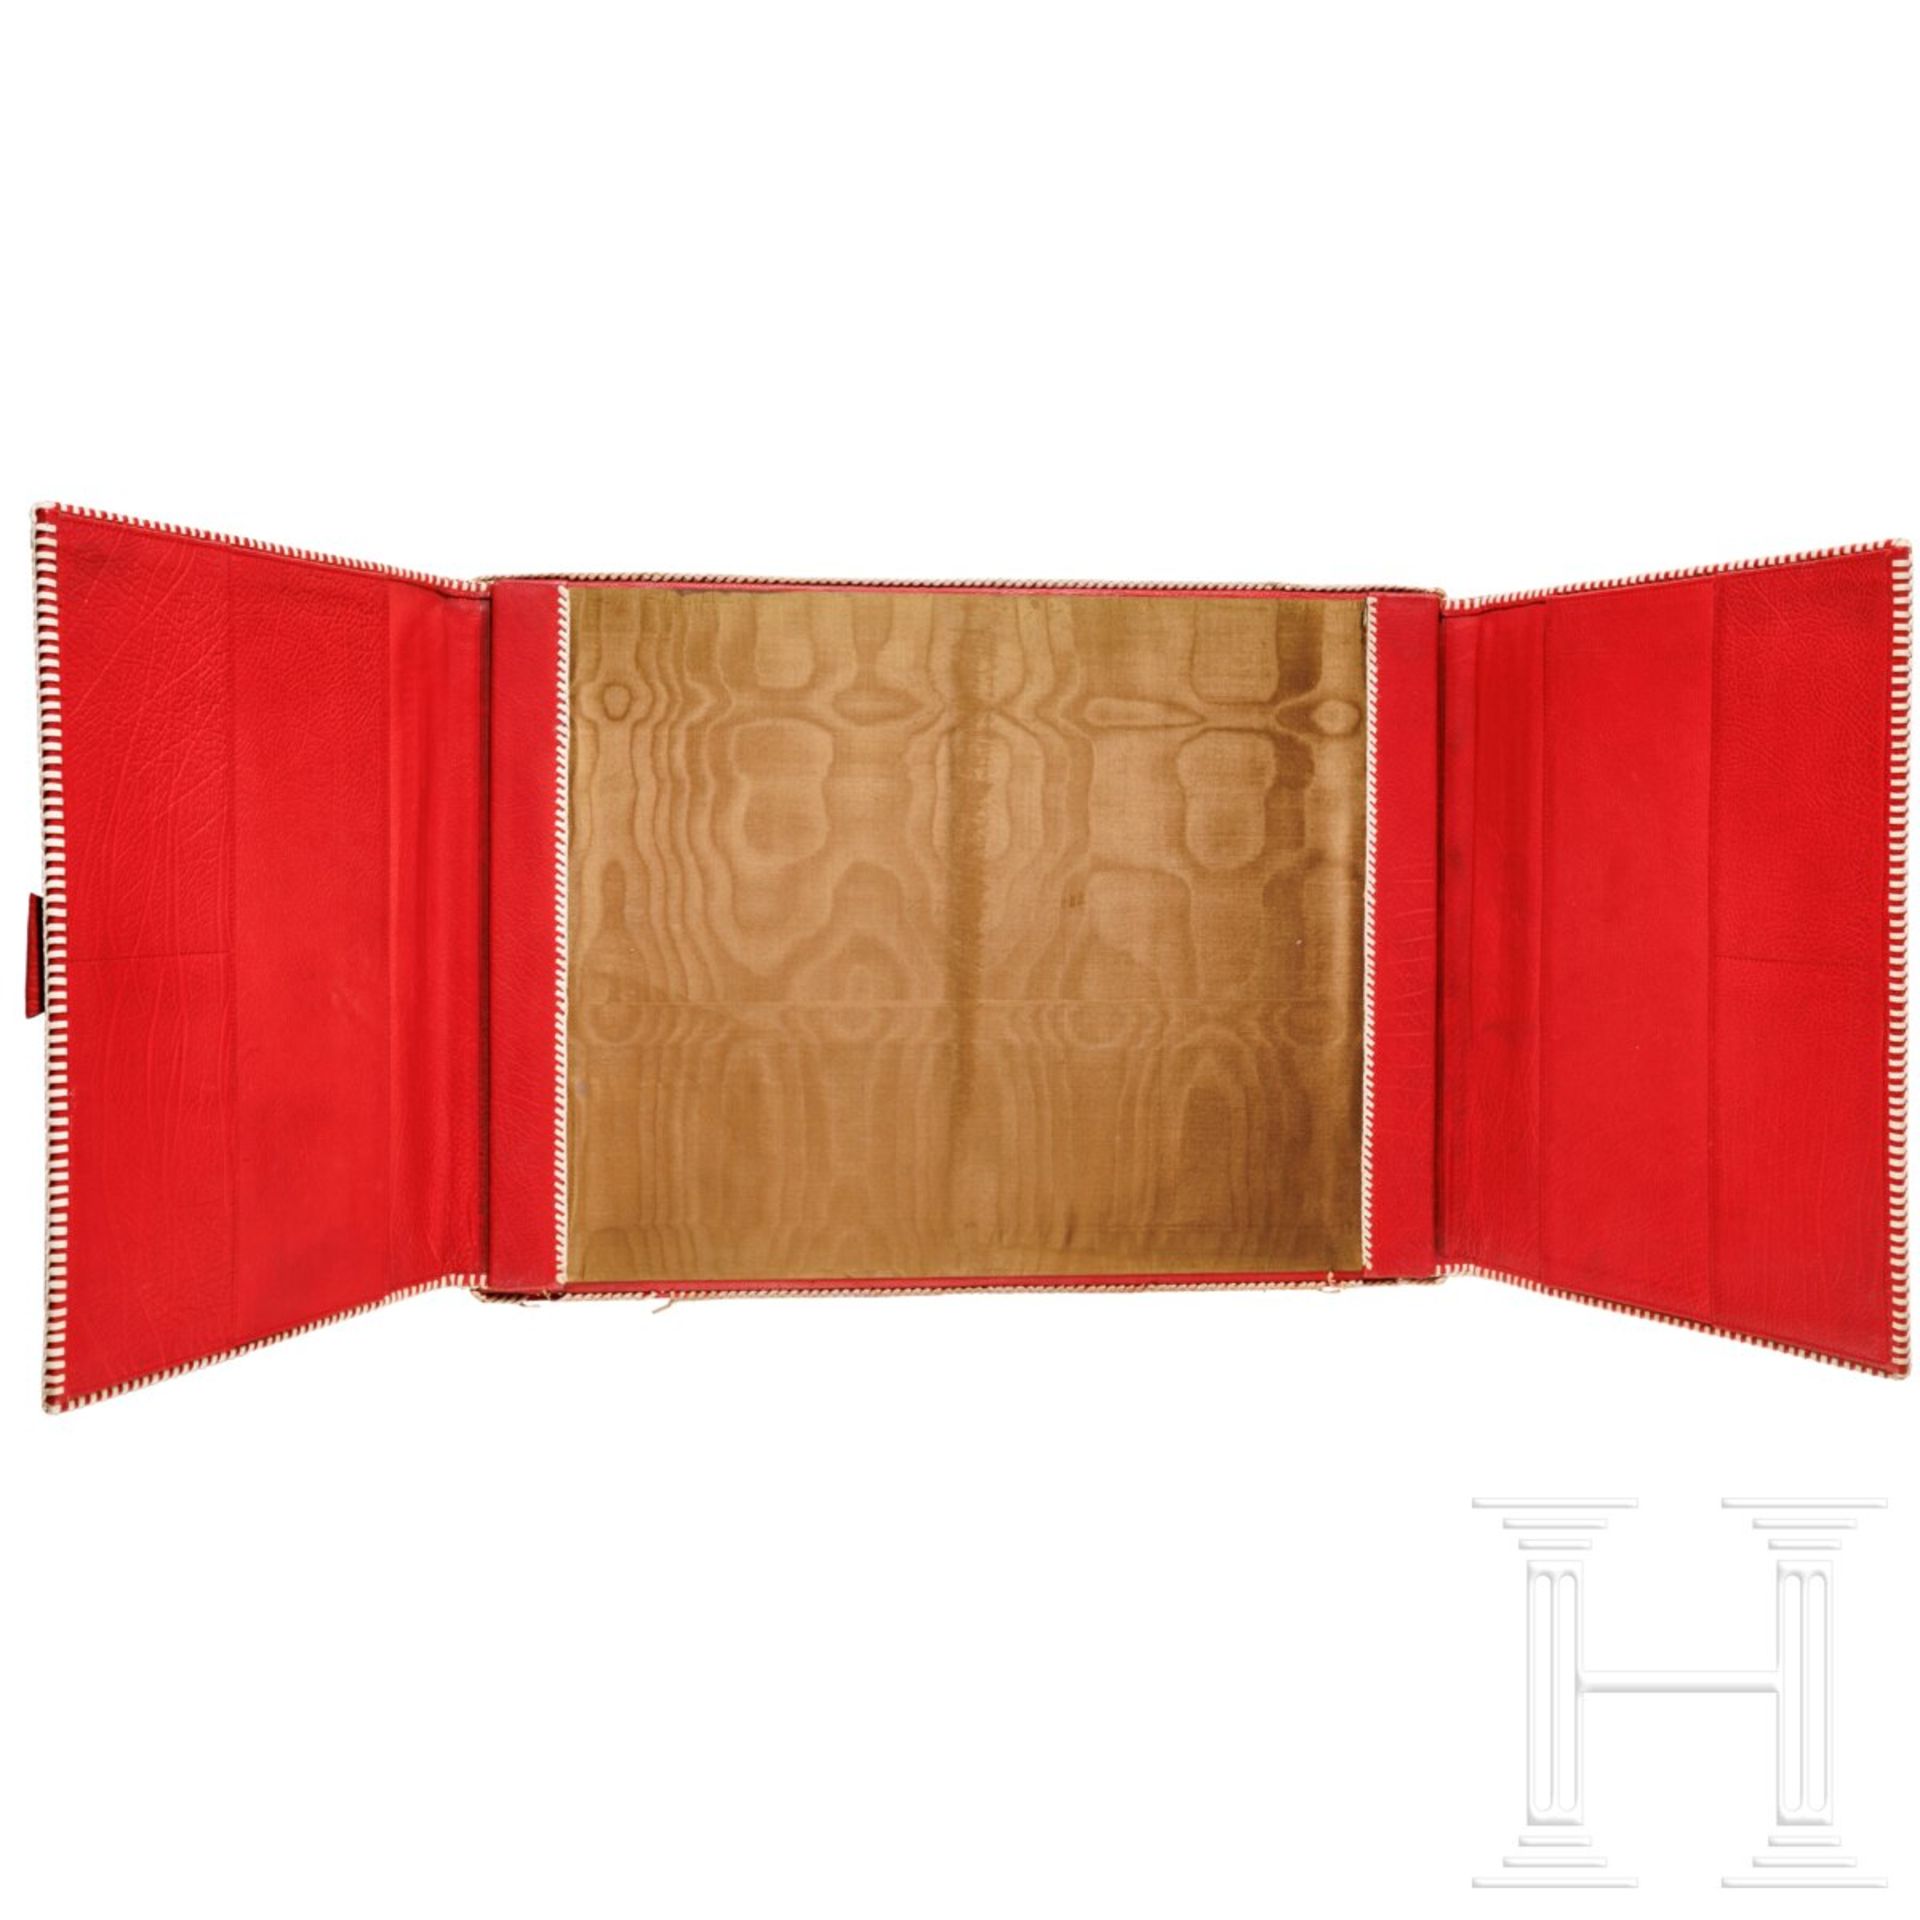 Emmy Göring - rote Maroquinledermappe mit geflochtener weißer Ledereinfassung - Bild 2 aus 4